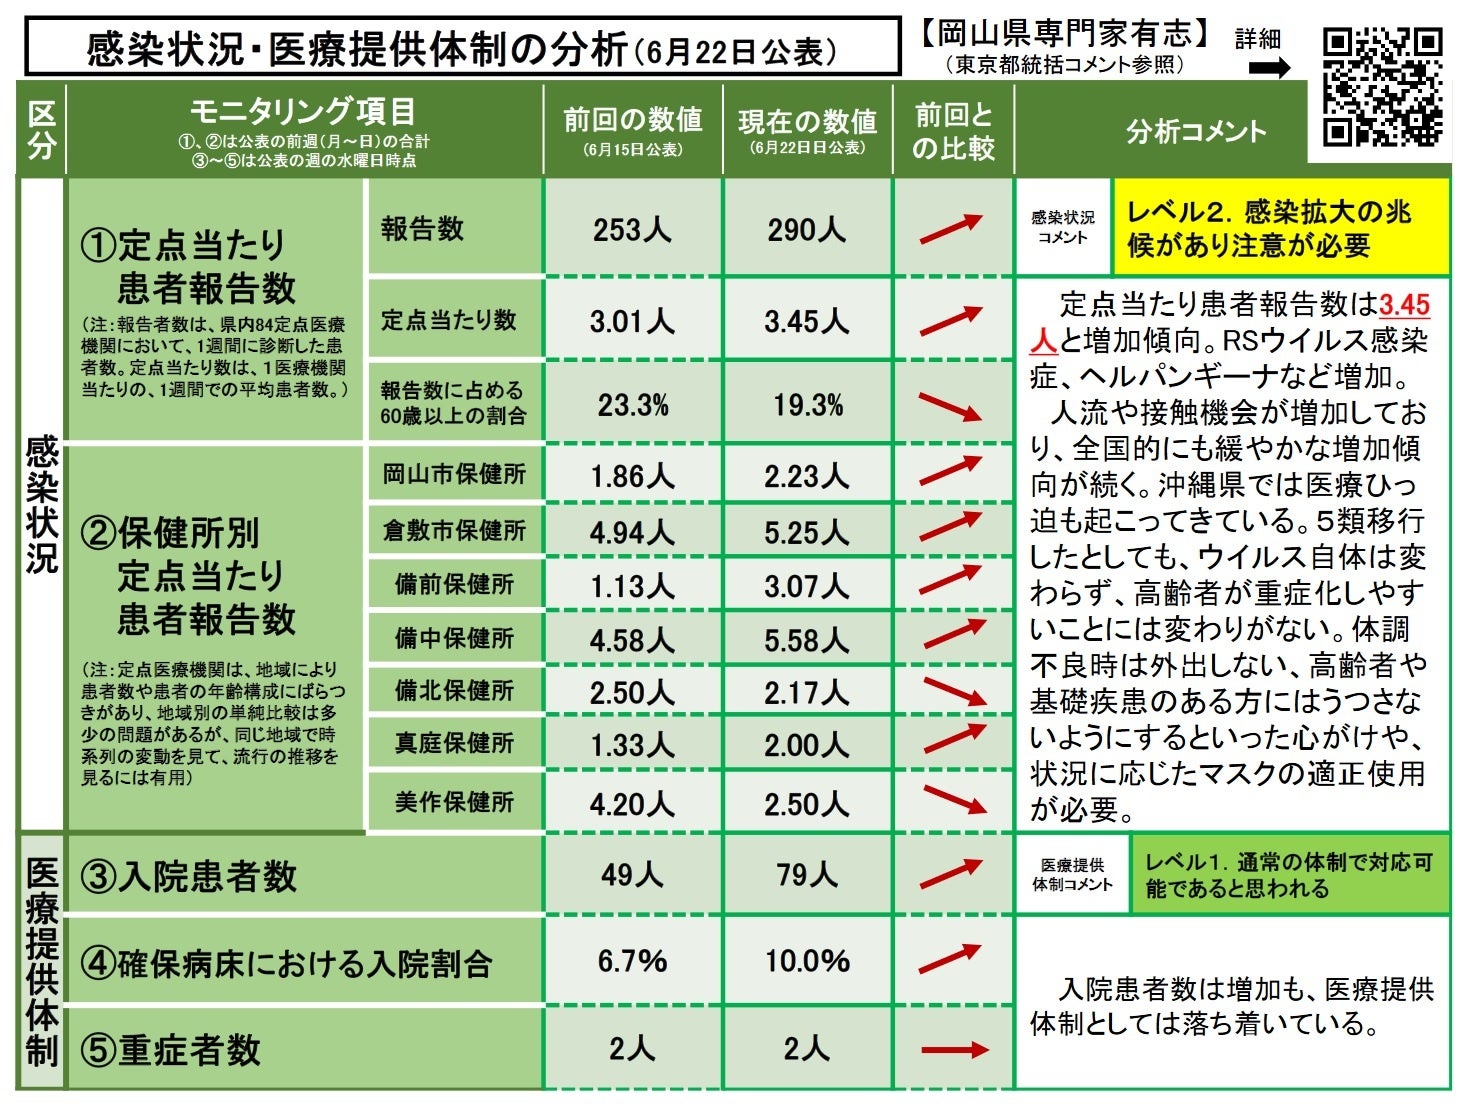 【岡山大学】岡山県内の感染状況・医療提供体制の分析について（2023年6月22日現在）